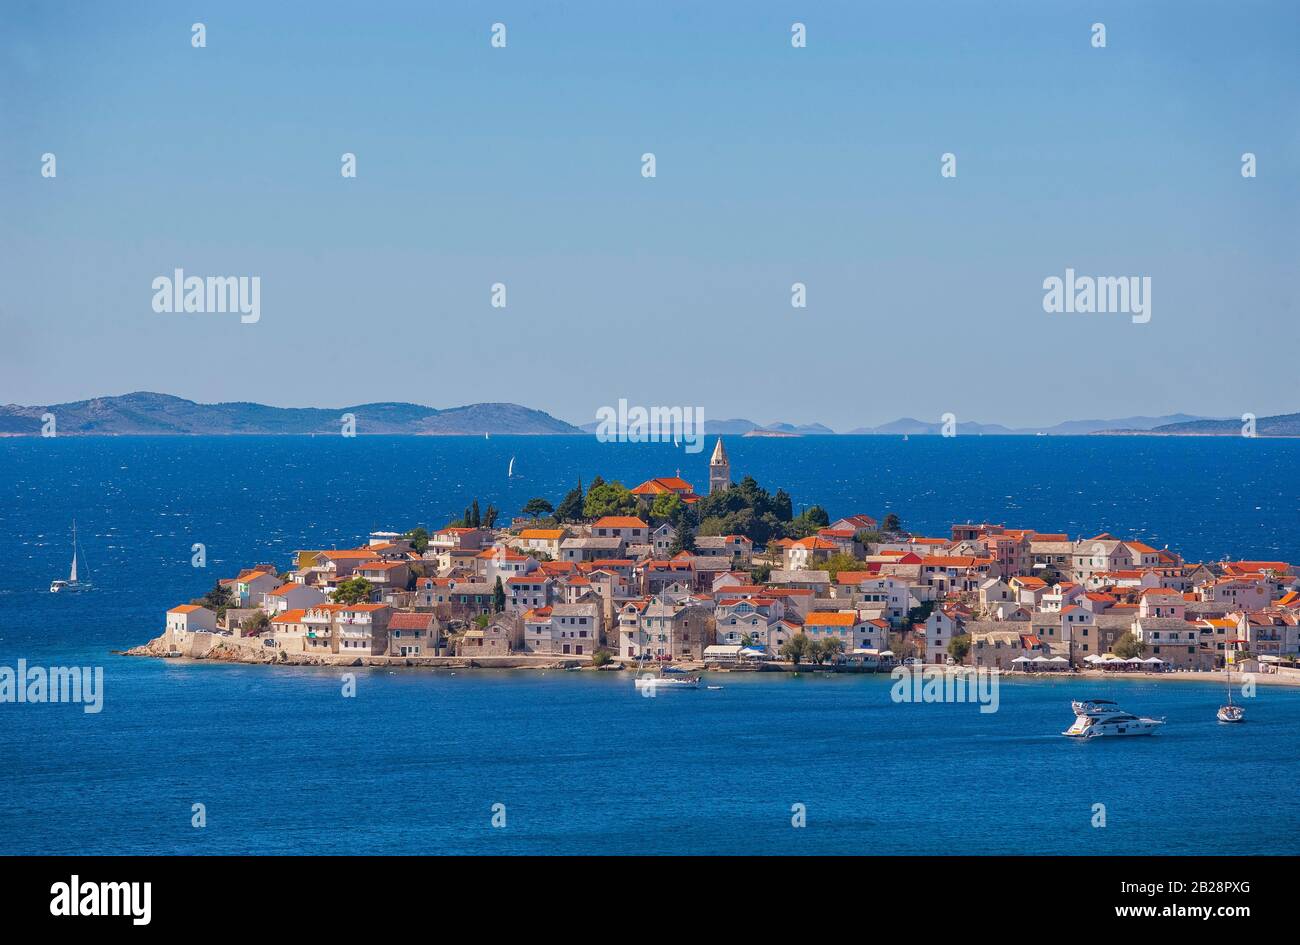 Primosten, Croatian Adriatic Coast, Central Dalmatia, Dalmatia, Croatia Stock Photo